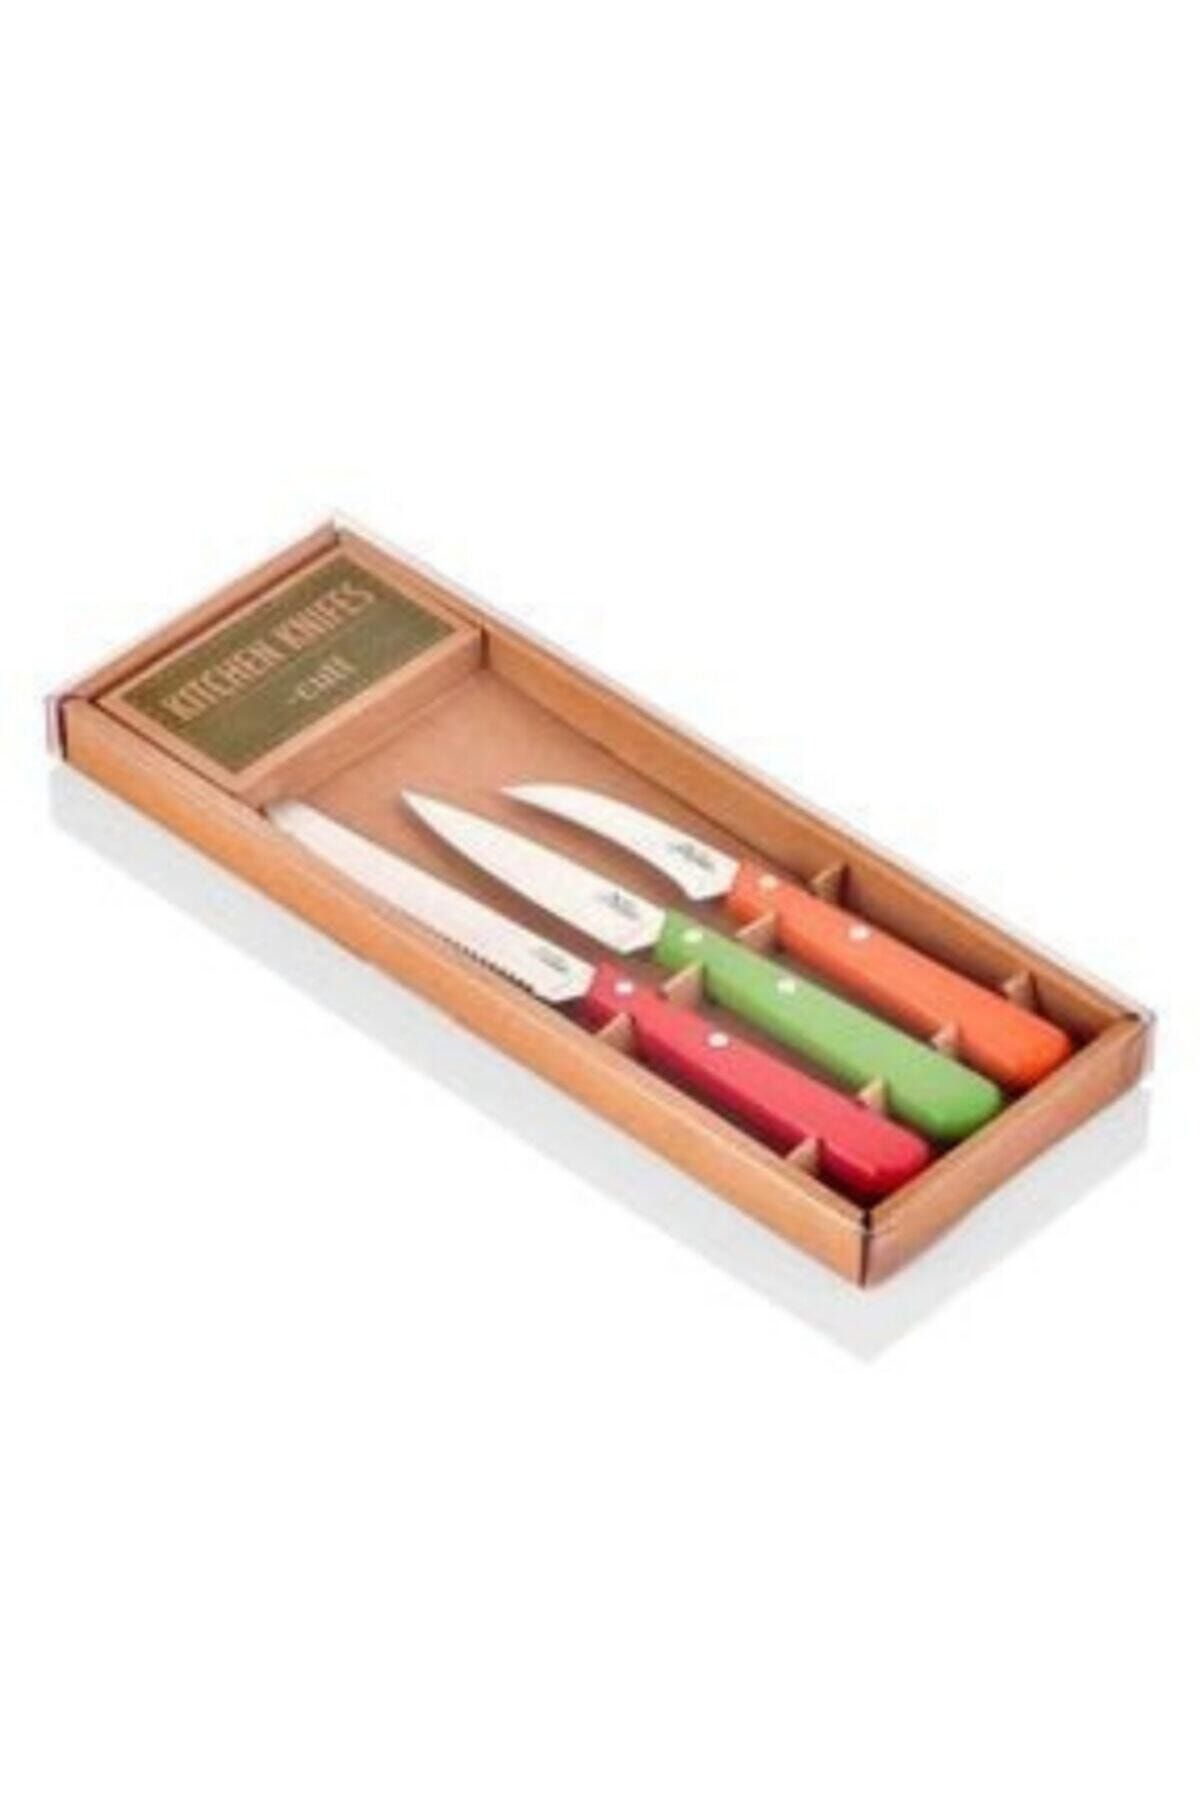 The Mia Cutt Mutfak Bıçak Seti 3-lü Set